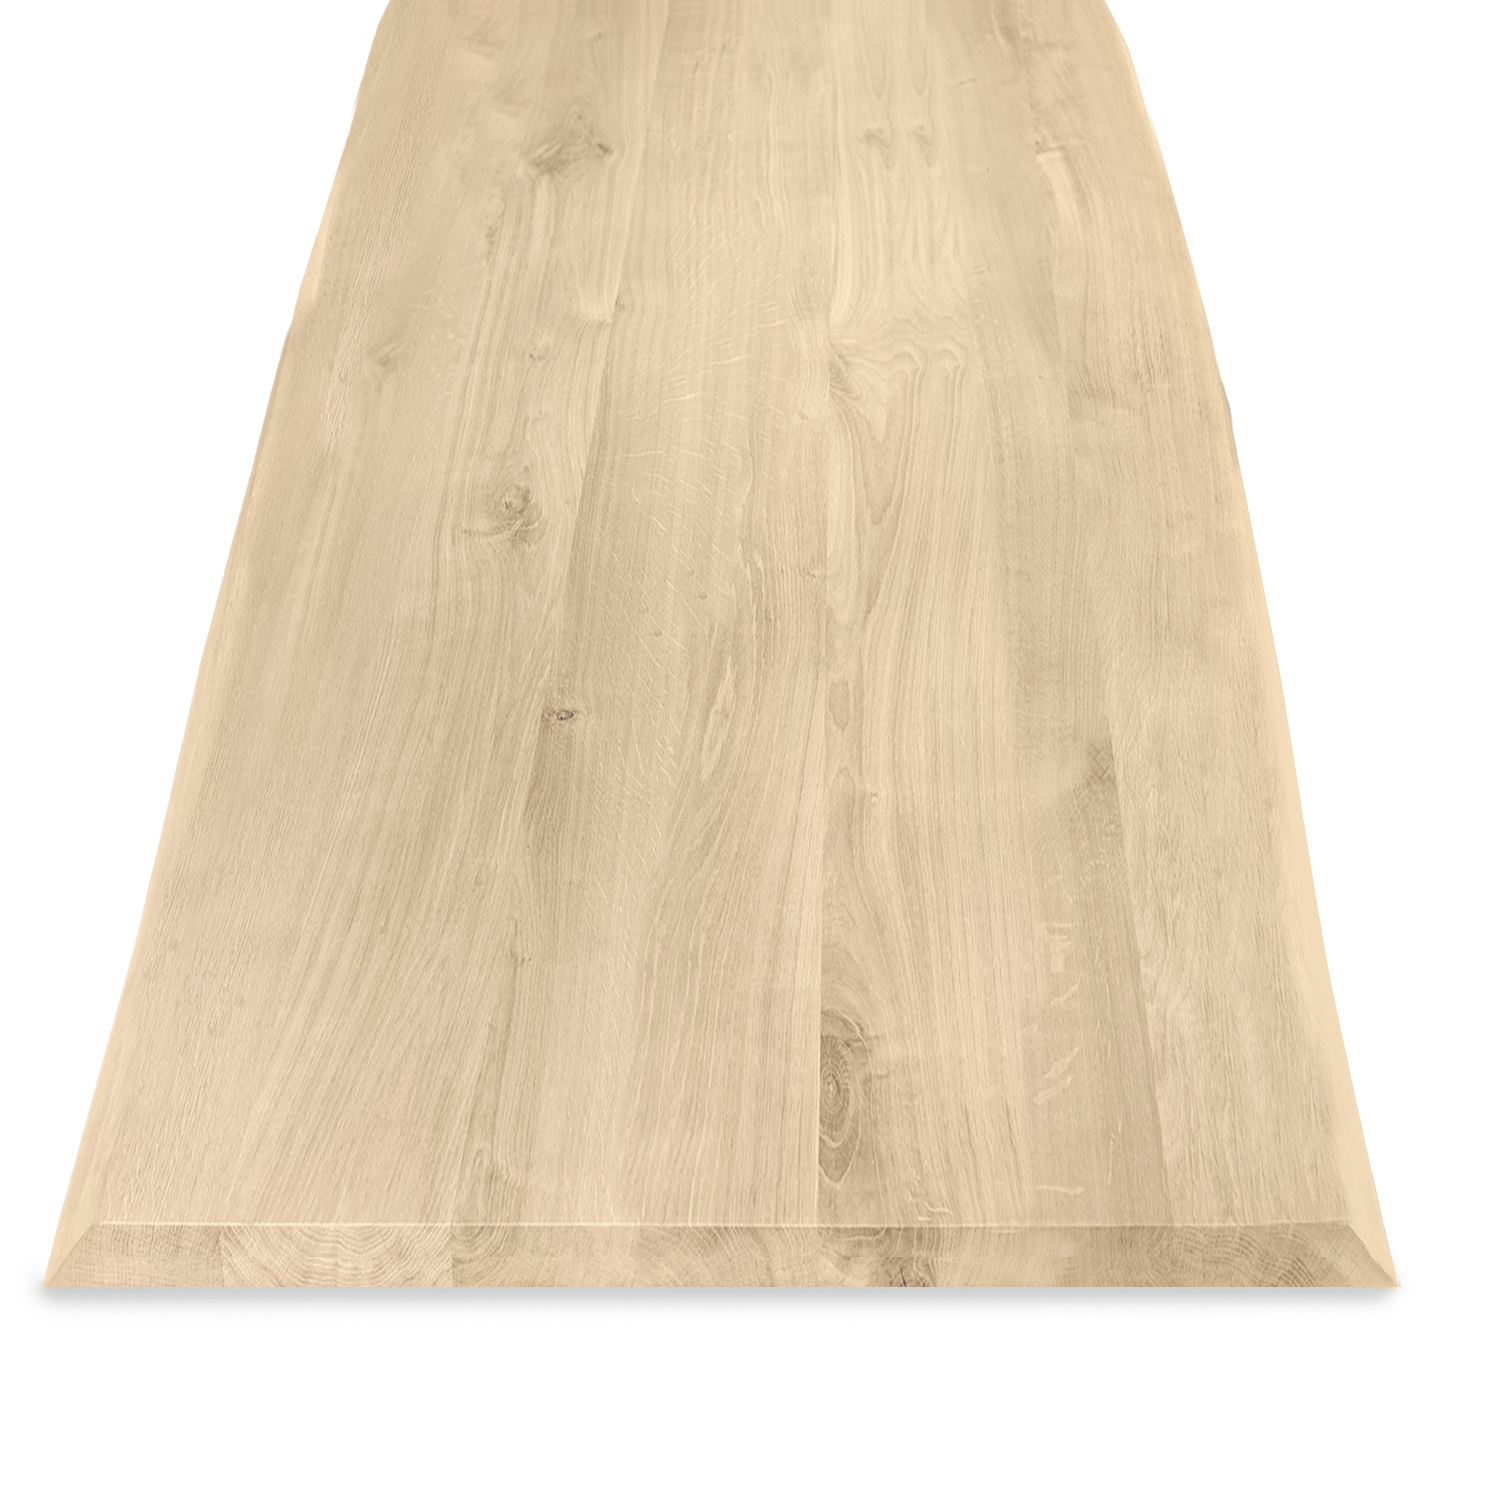  Tischplatte Eiche - mit Baumkante (Optik)  - 2,7 cm dick (1-Schicht) - Breite Lamellen (10 - 12 cm breit) - Eichenholz rustikal - verleimt & künstlich getrocknet (HF 8-12%) - verschiedene Größen